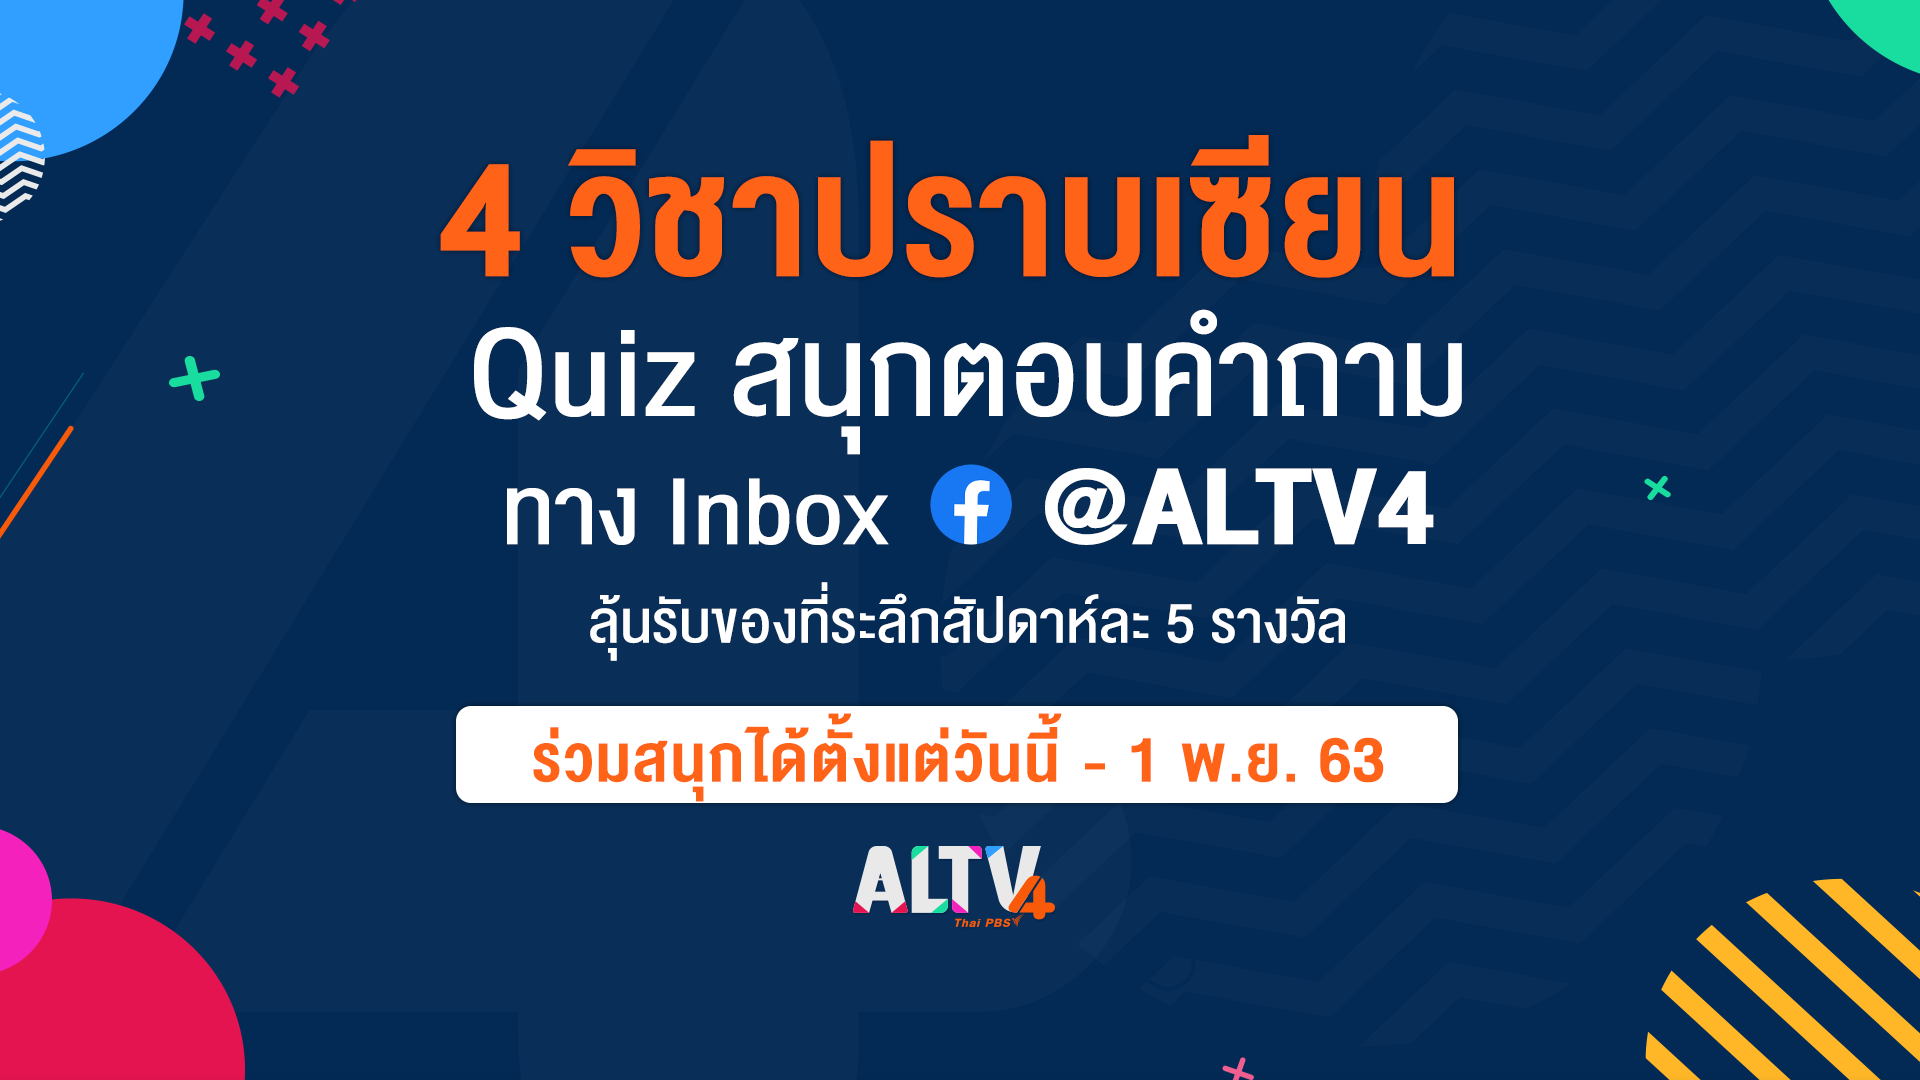 ALTV ชวนร่วมสนุก “4 วิชาปราบเซียน” วันนี้ - 1 พ.ย. 63 ทาง Facebook @ALTV4